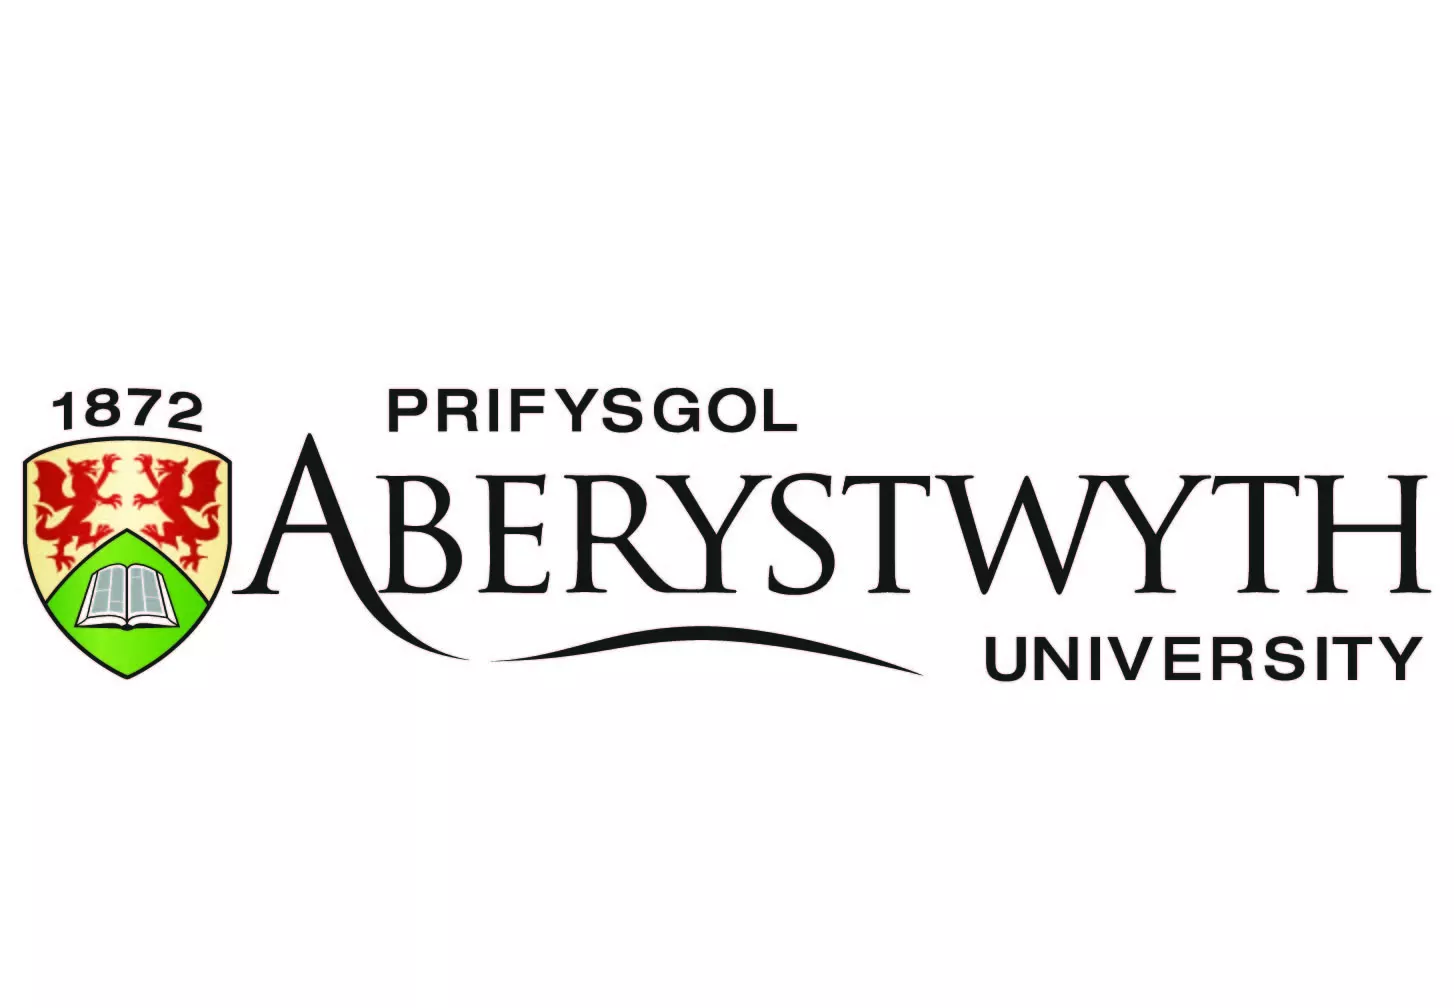 Aberystwyth UNIVERSITY